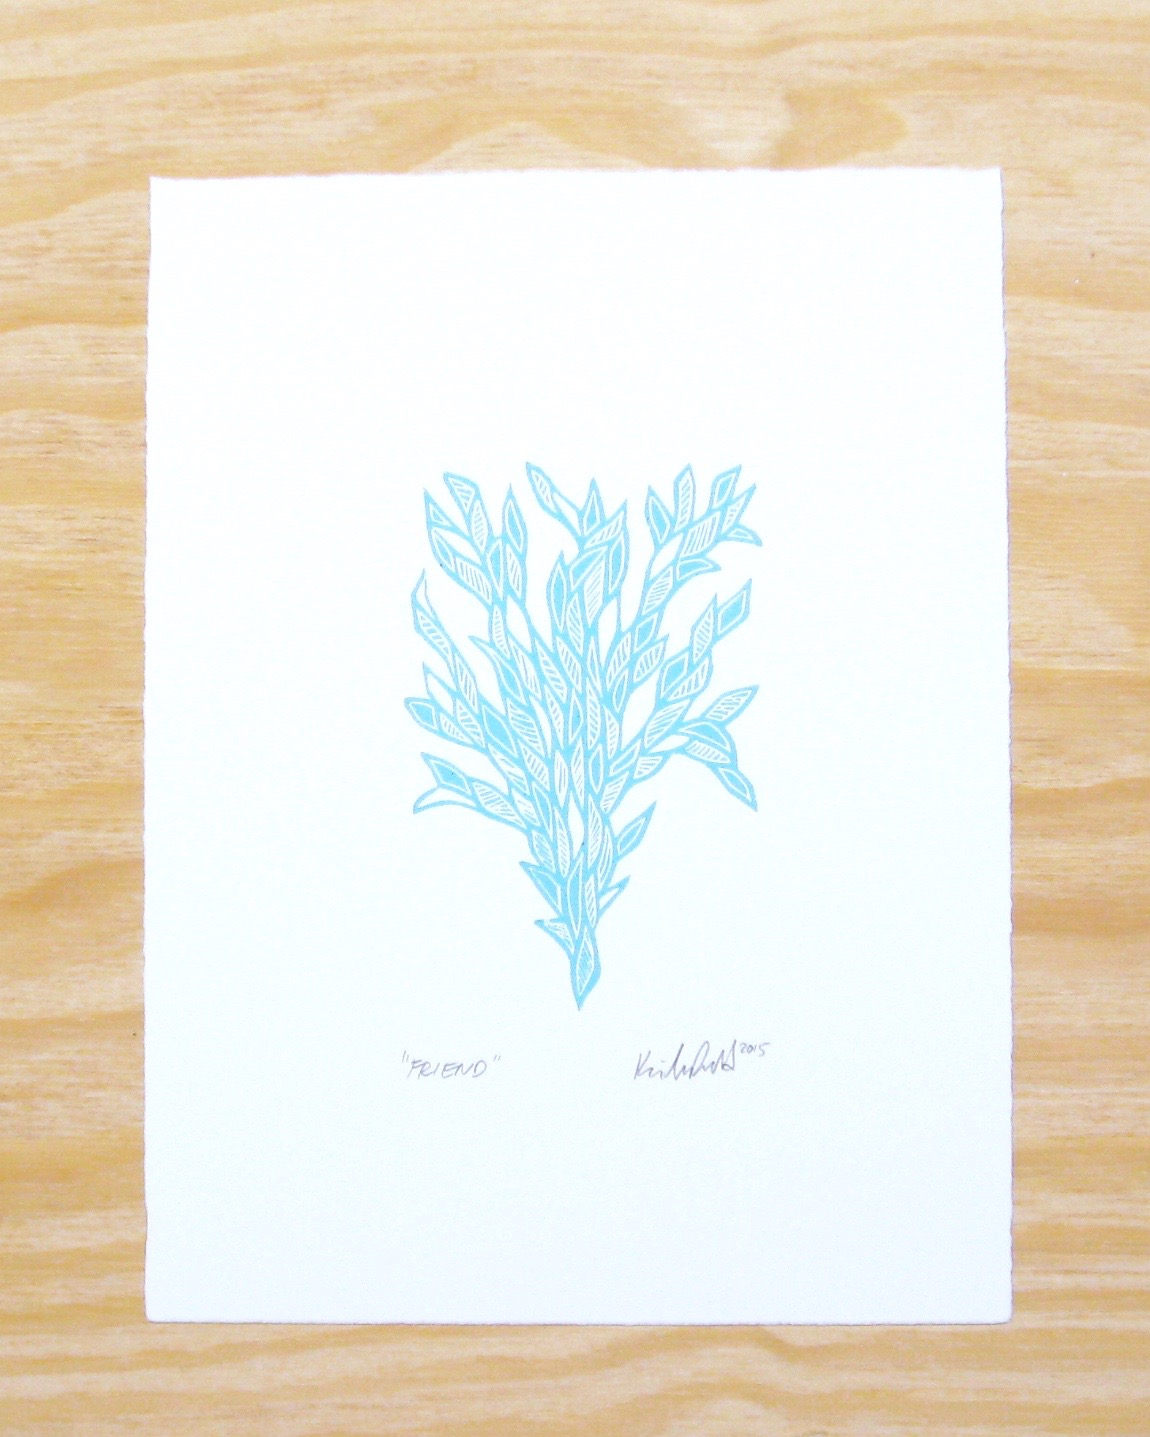 Friend in sky blue - woodblock print (9x12”)